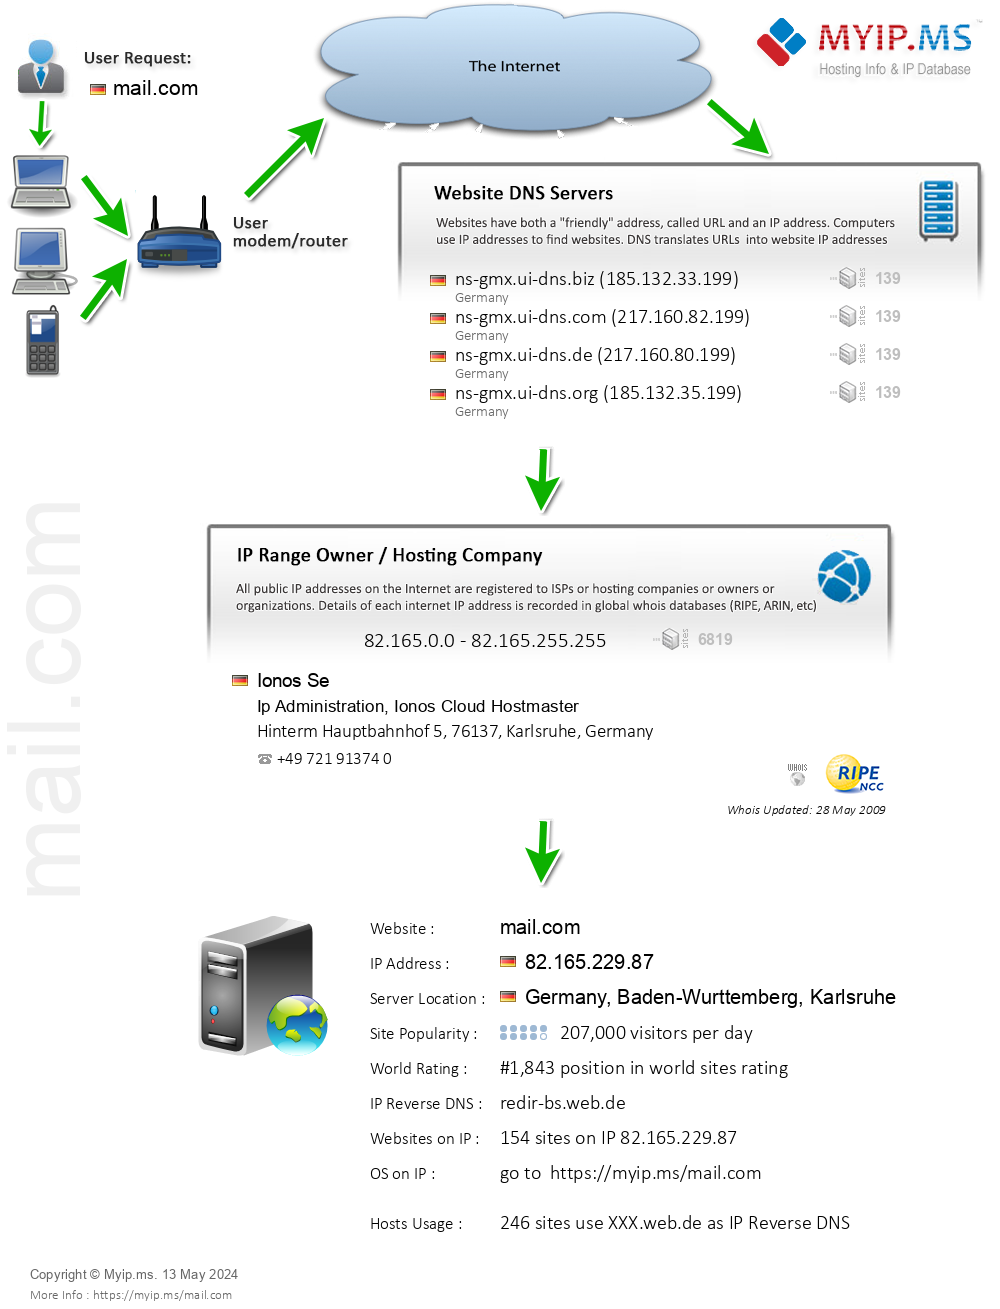 Mail.com - Website Hosting Visual IP Diagram